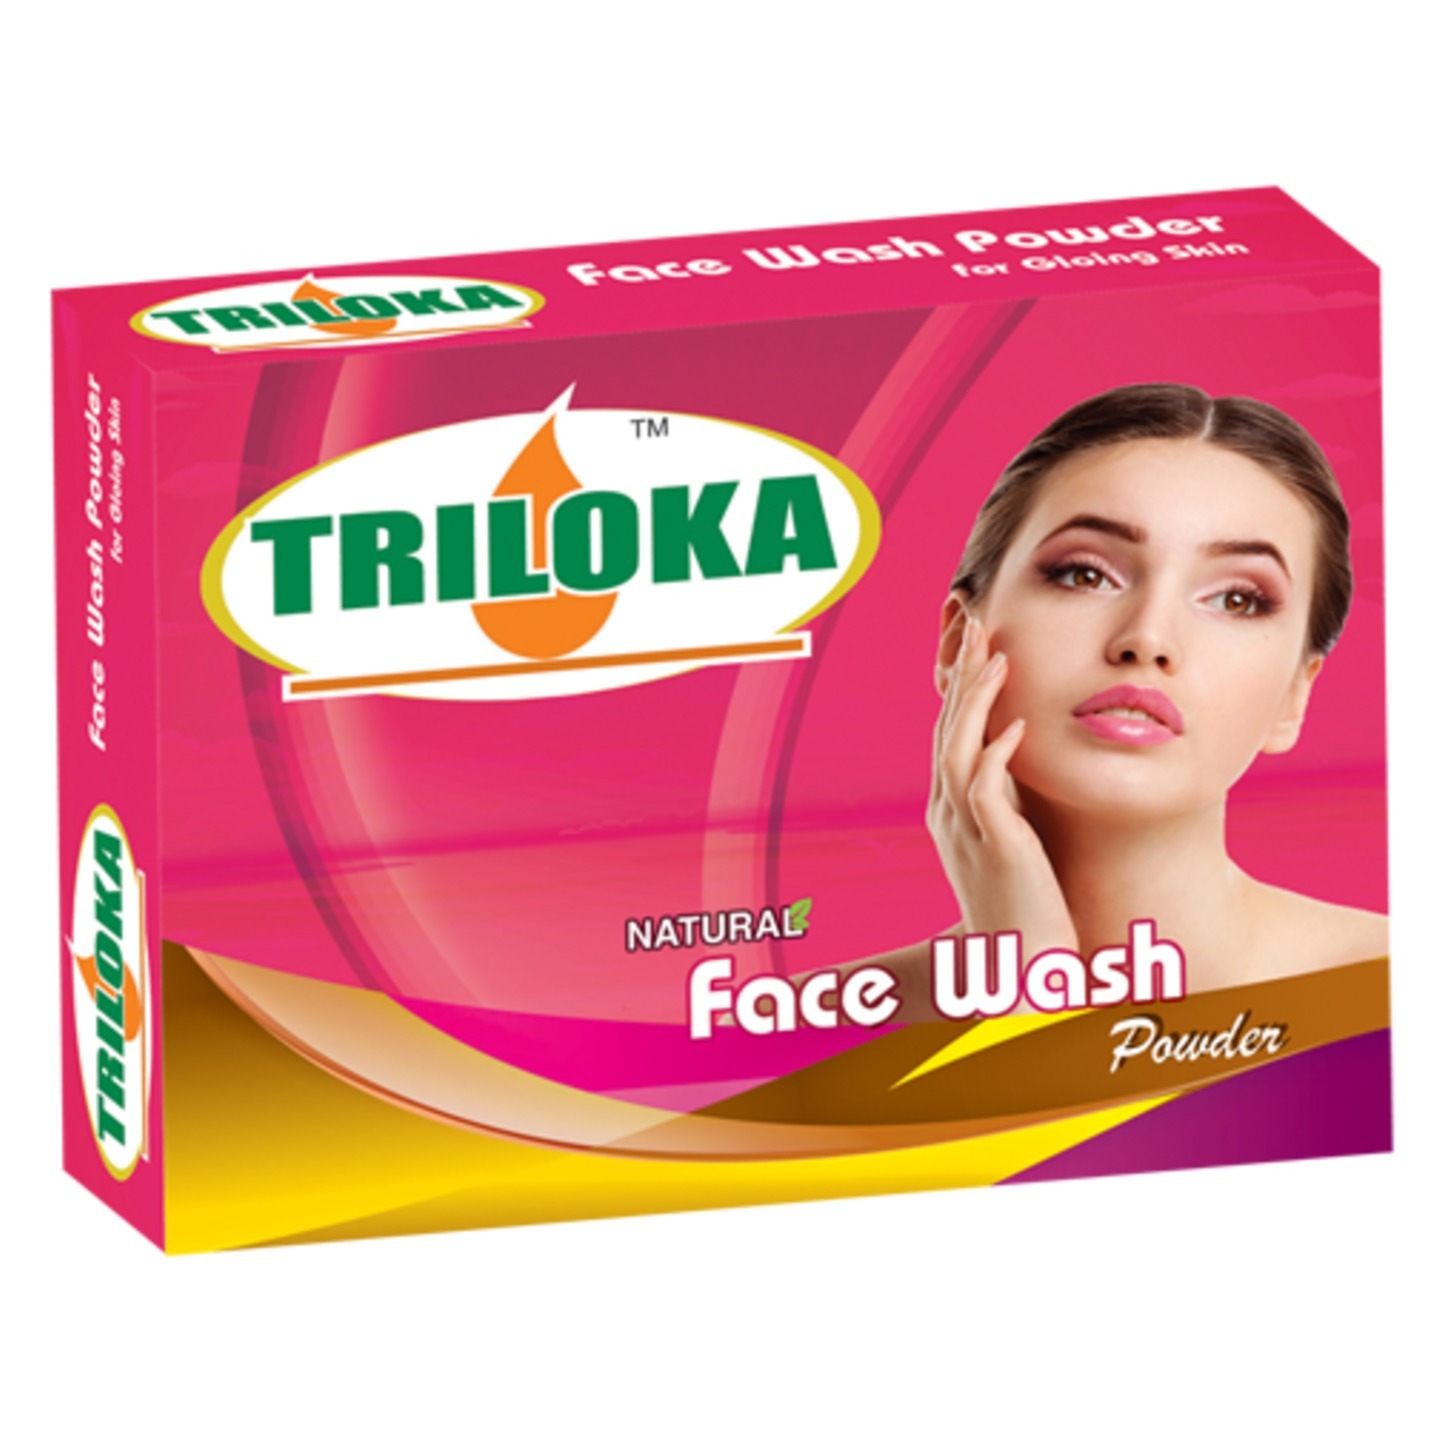 New Triloka Facewash  Powder( Face Wash Powder) - 1 case